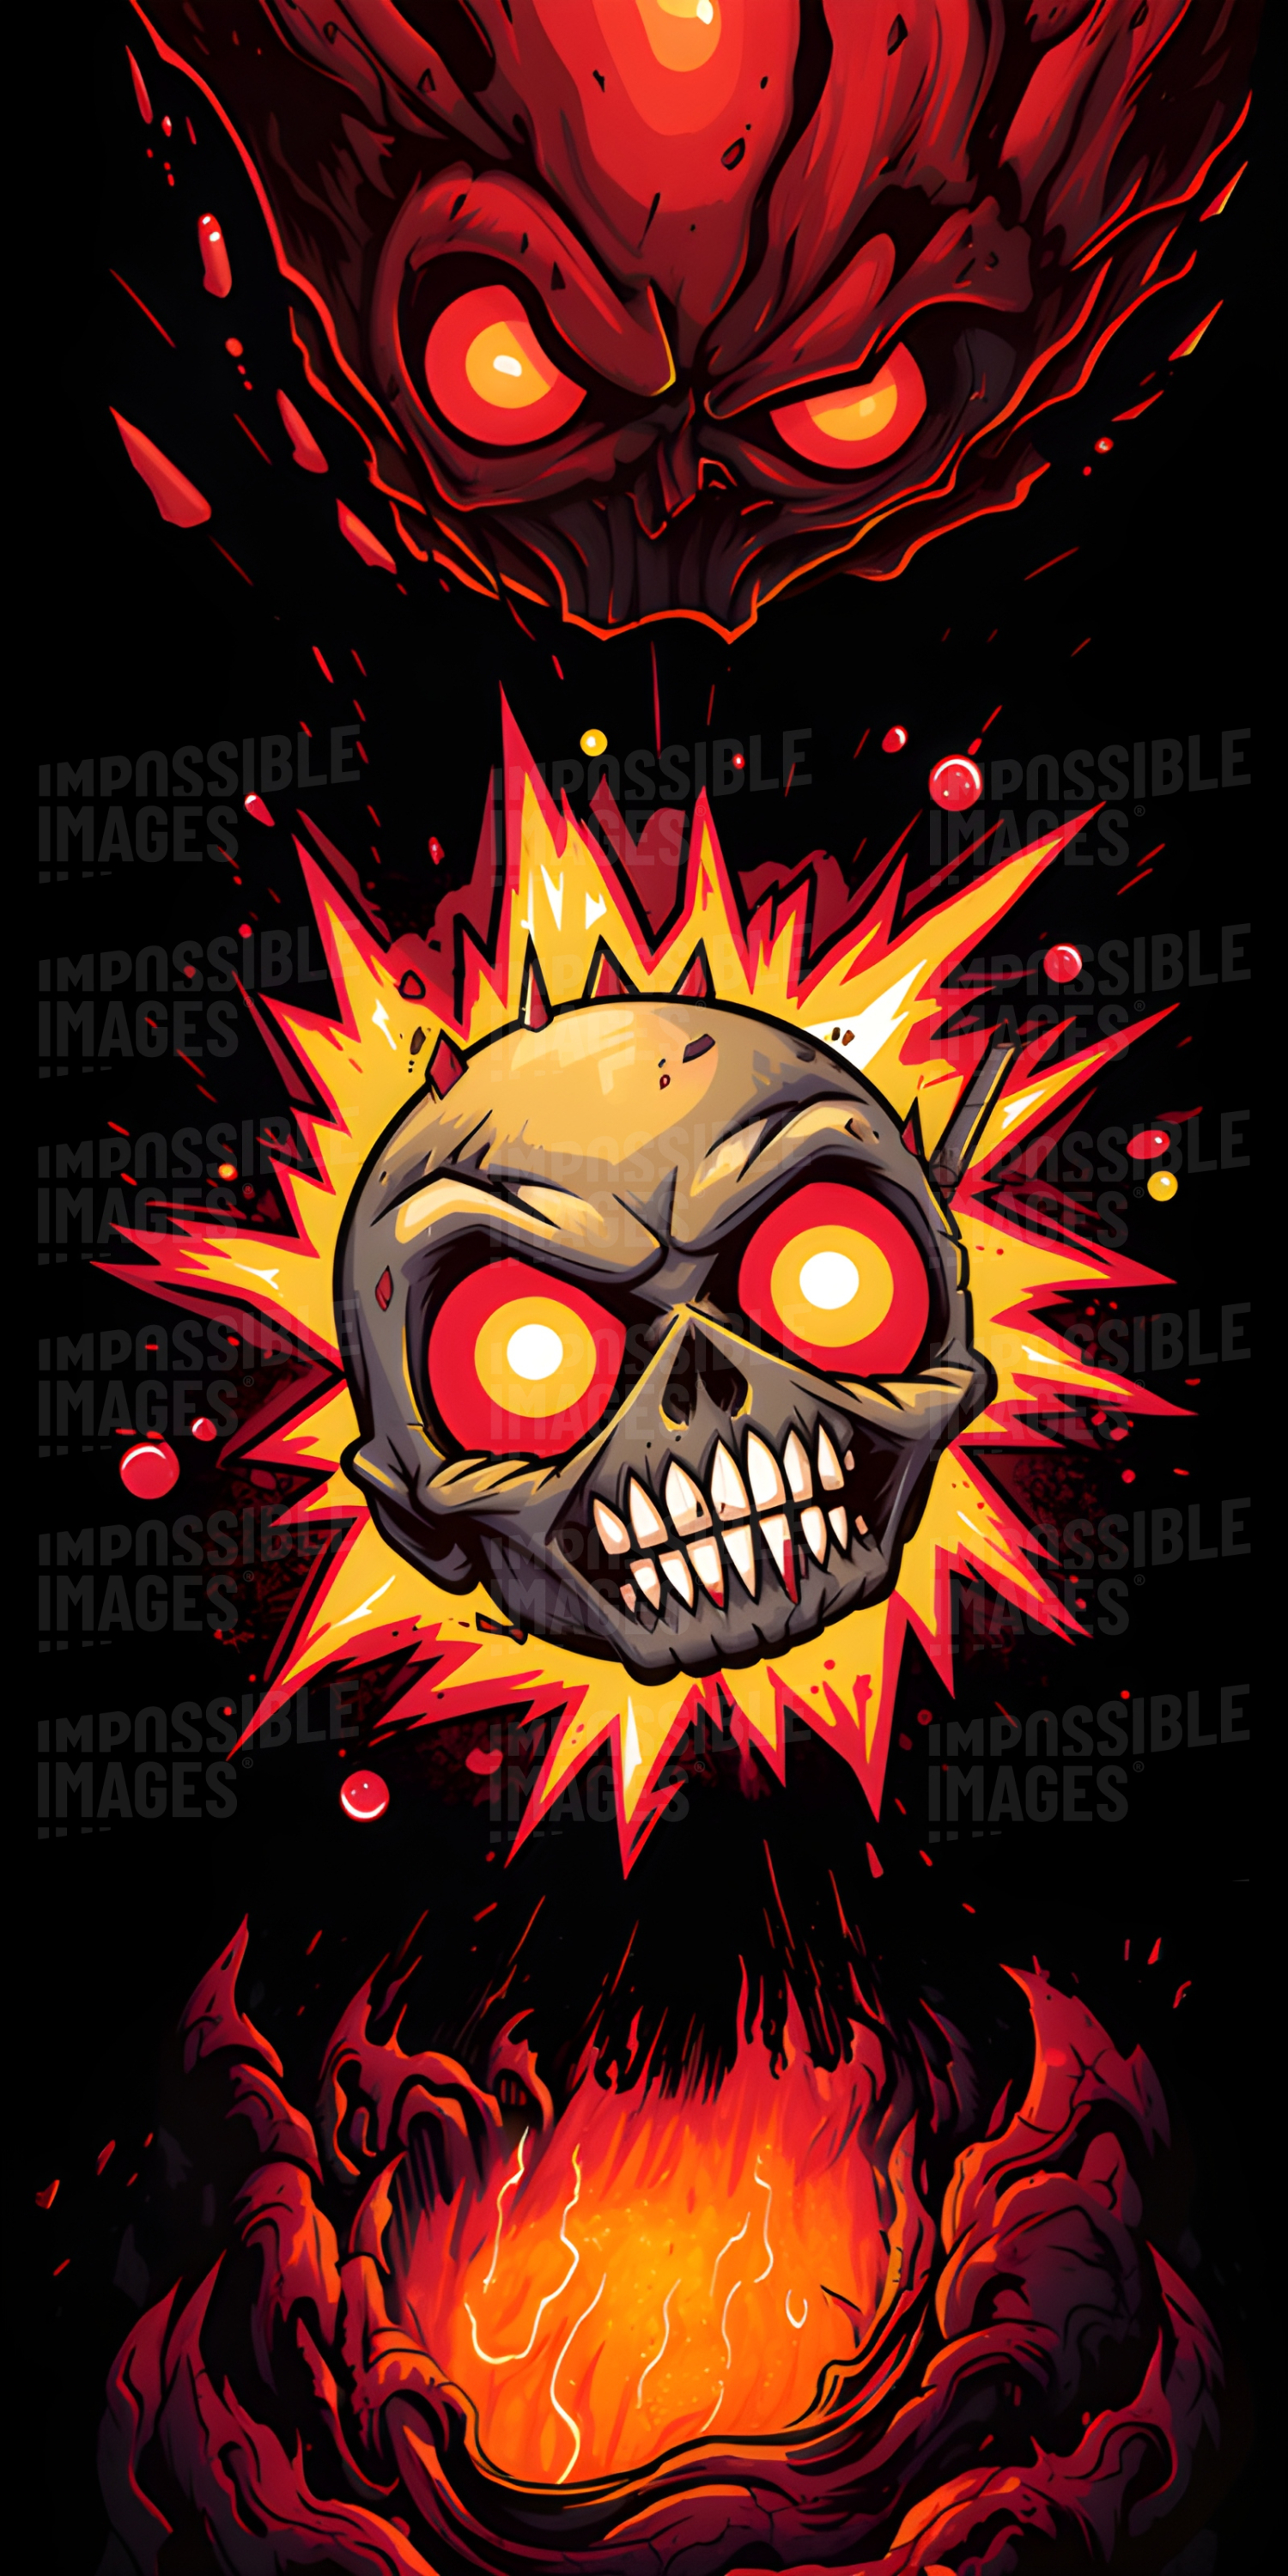 Skull fireball illustration (phone wallpaper background)